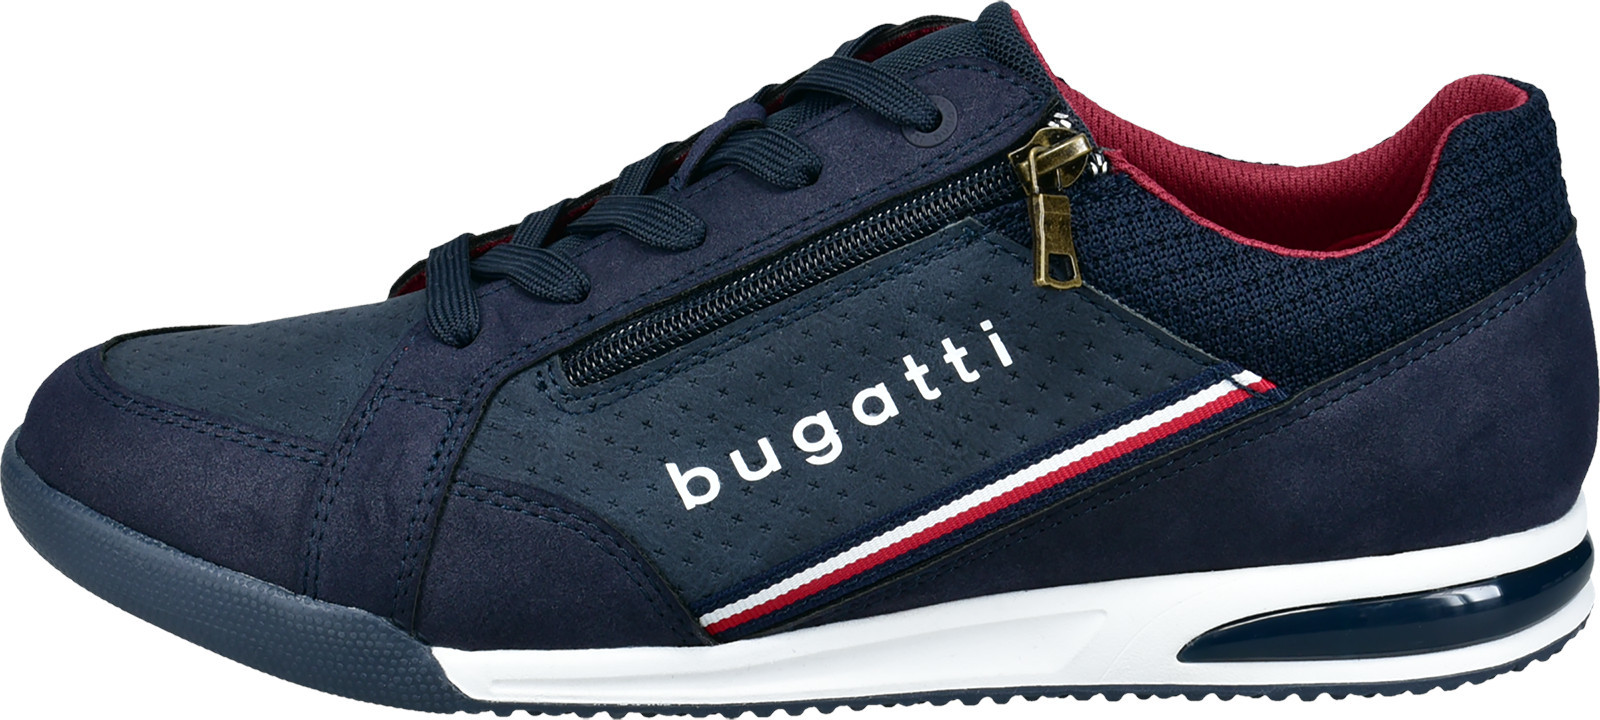 Bugatti Férfi sportcipő 321A38095900-4100 44